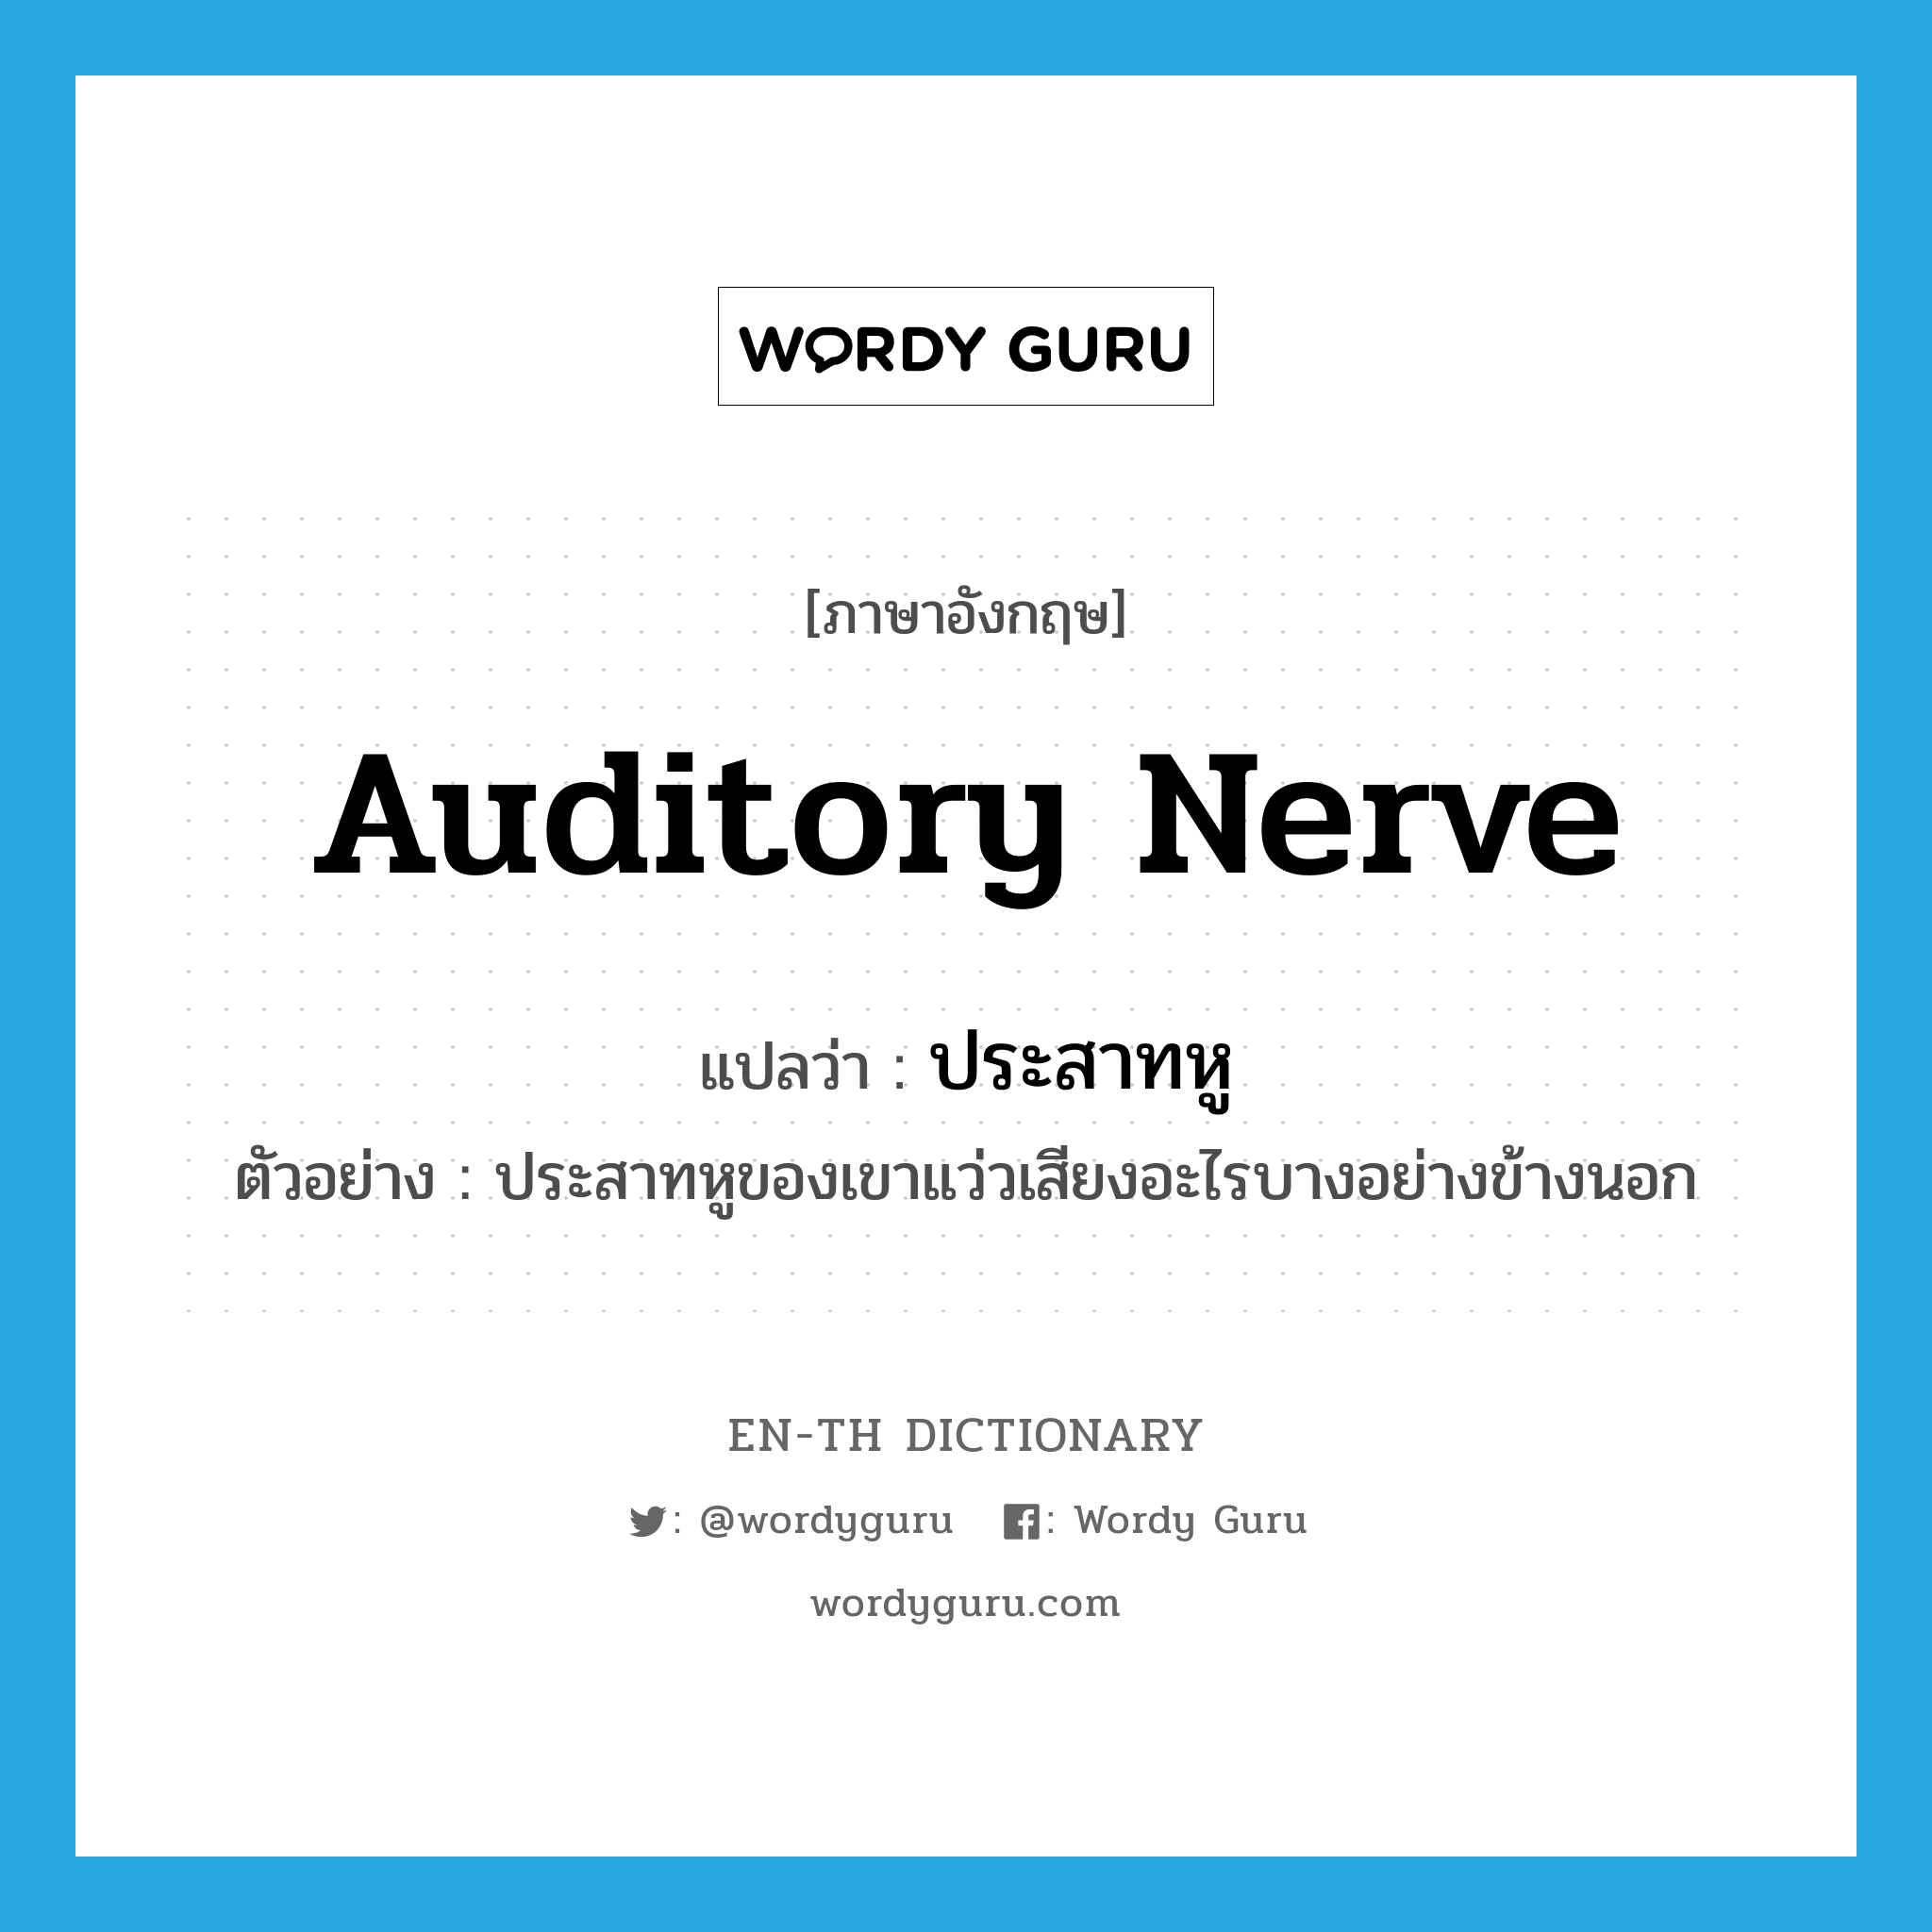 auditory nerve แปลว่า?, คำศัพท์ภาษาอังกฤษ auditory nerve แปลว่า ประสาทหู ประเภท N ตัวอย่าง ประสาทหูของเขาแว่วเสียงอะไรบางอย่างข้างนอก หมวด N